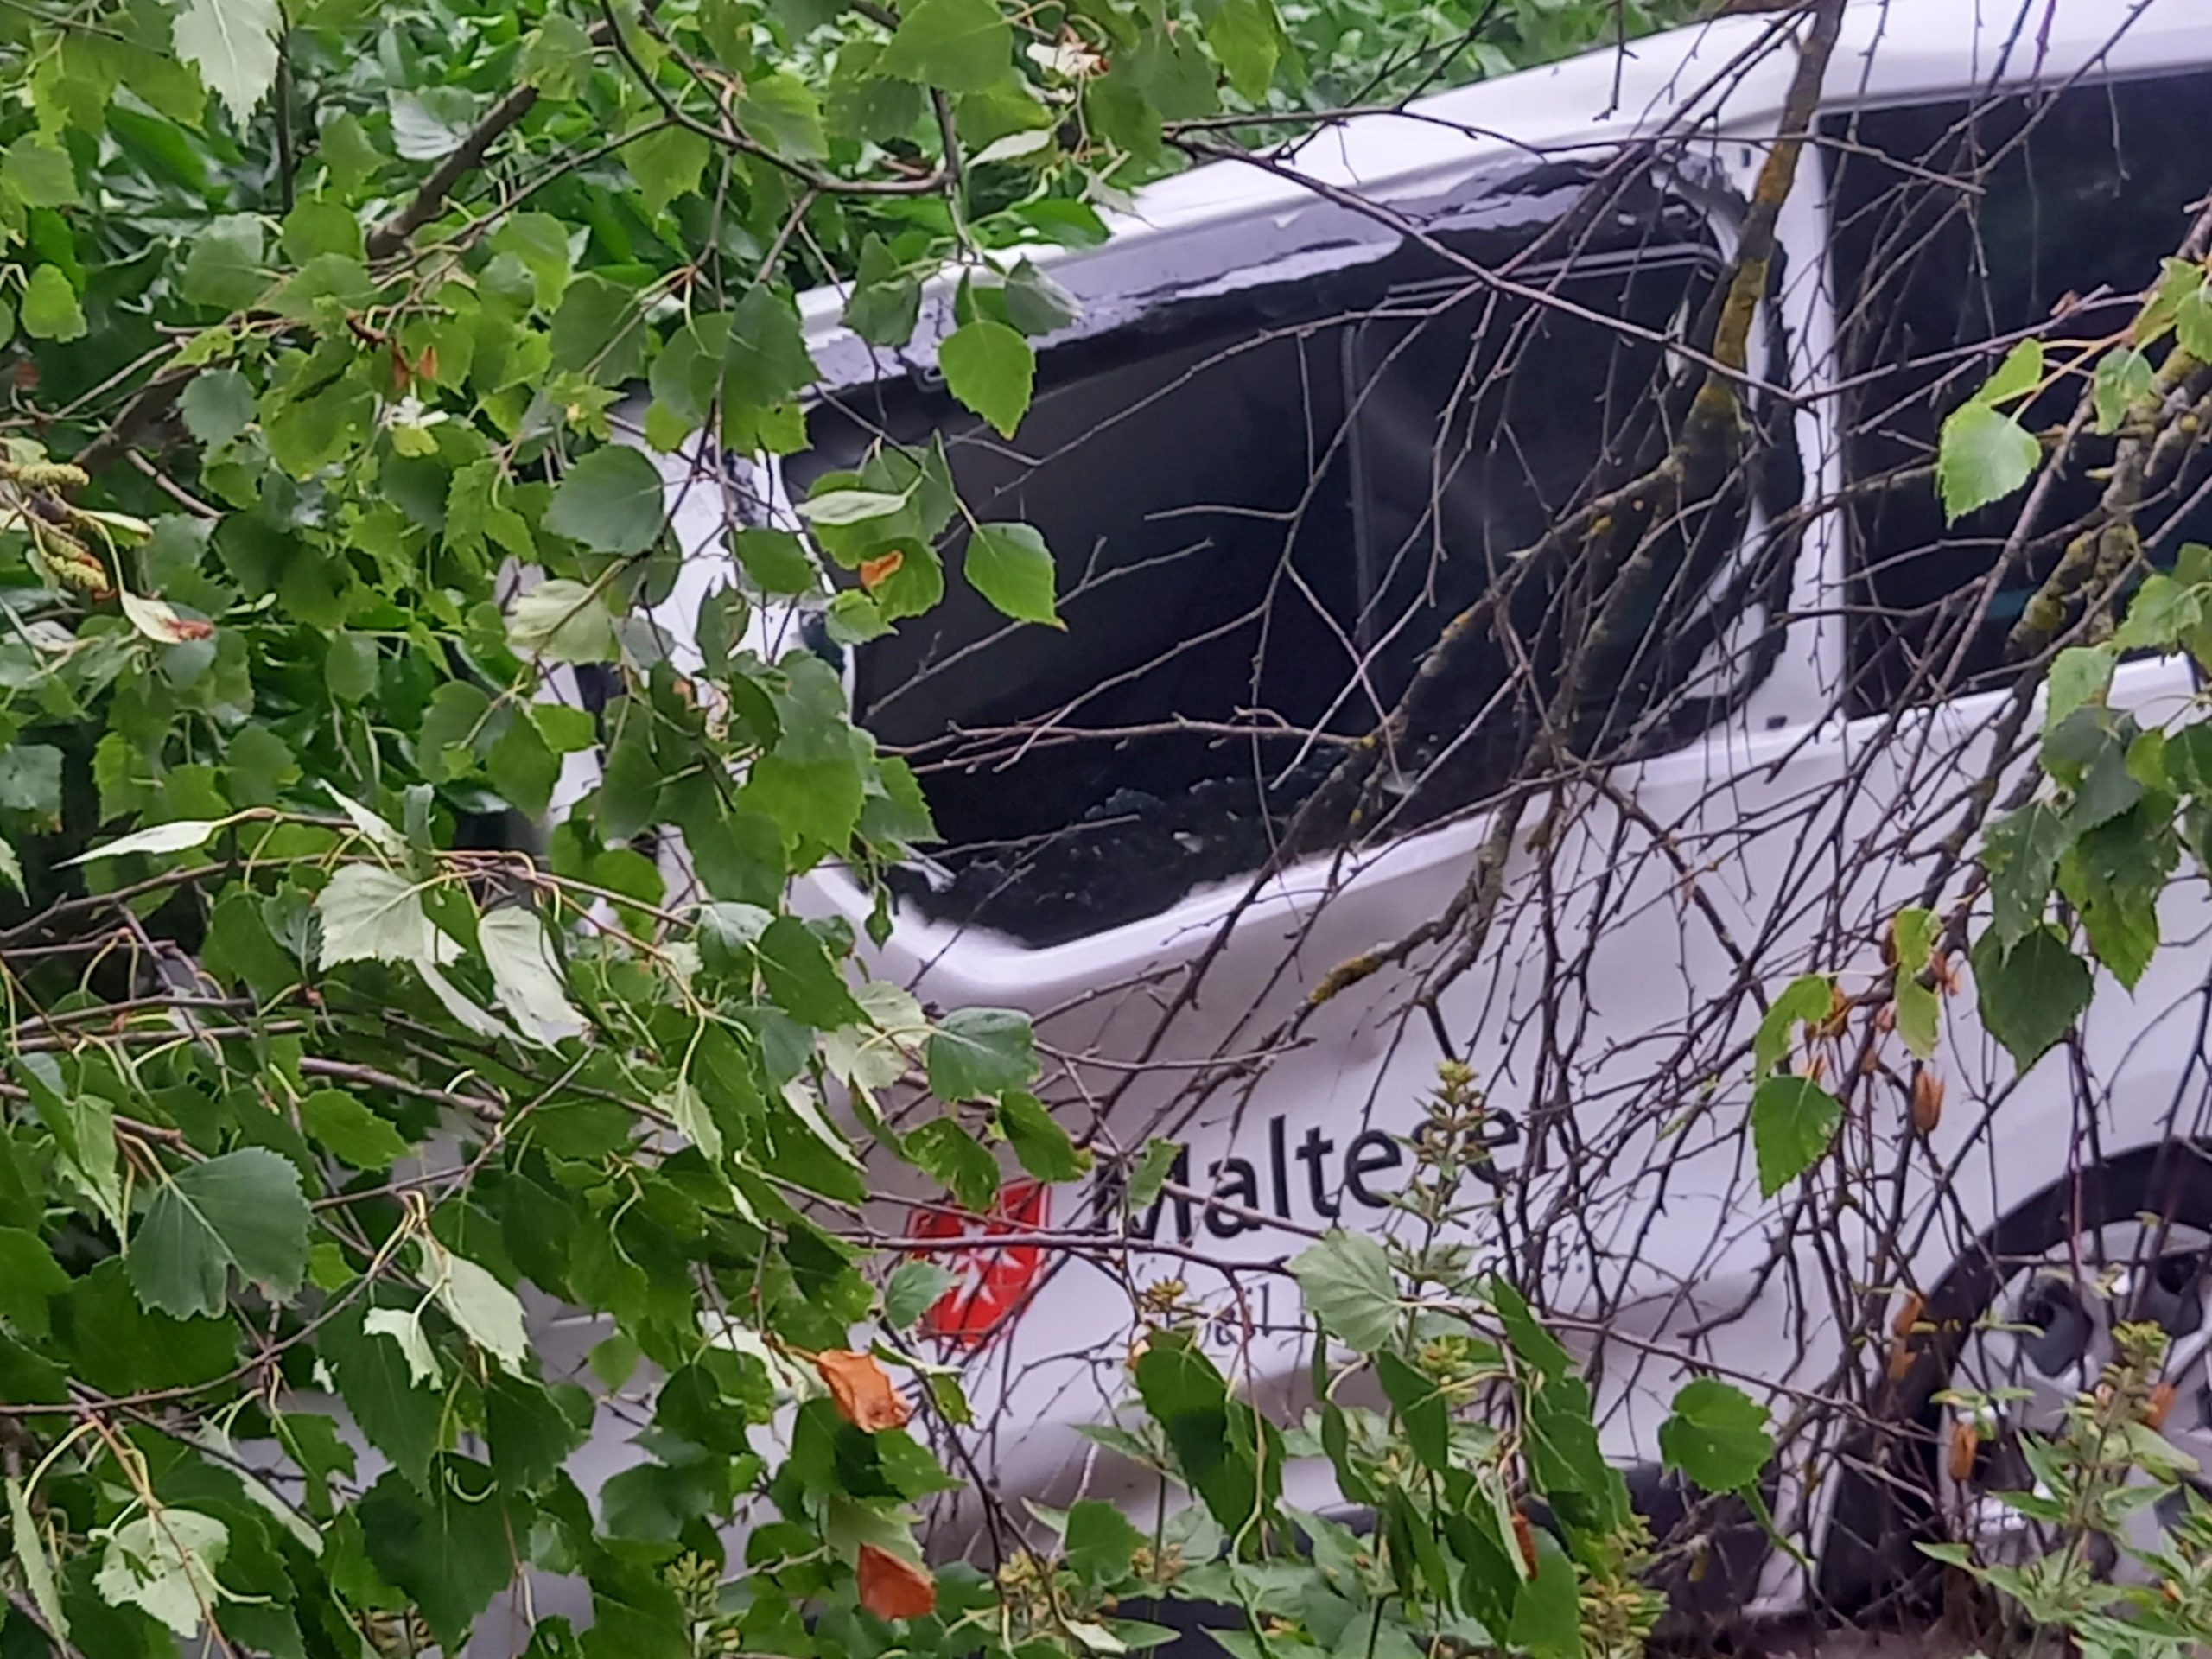 Malteser-Fahrzeug unter Baum begraben. Foto: Innpuls.me